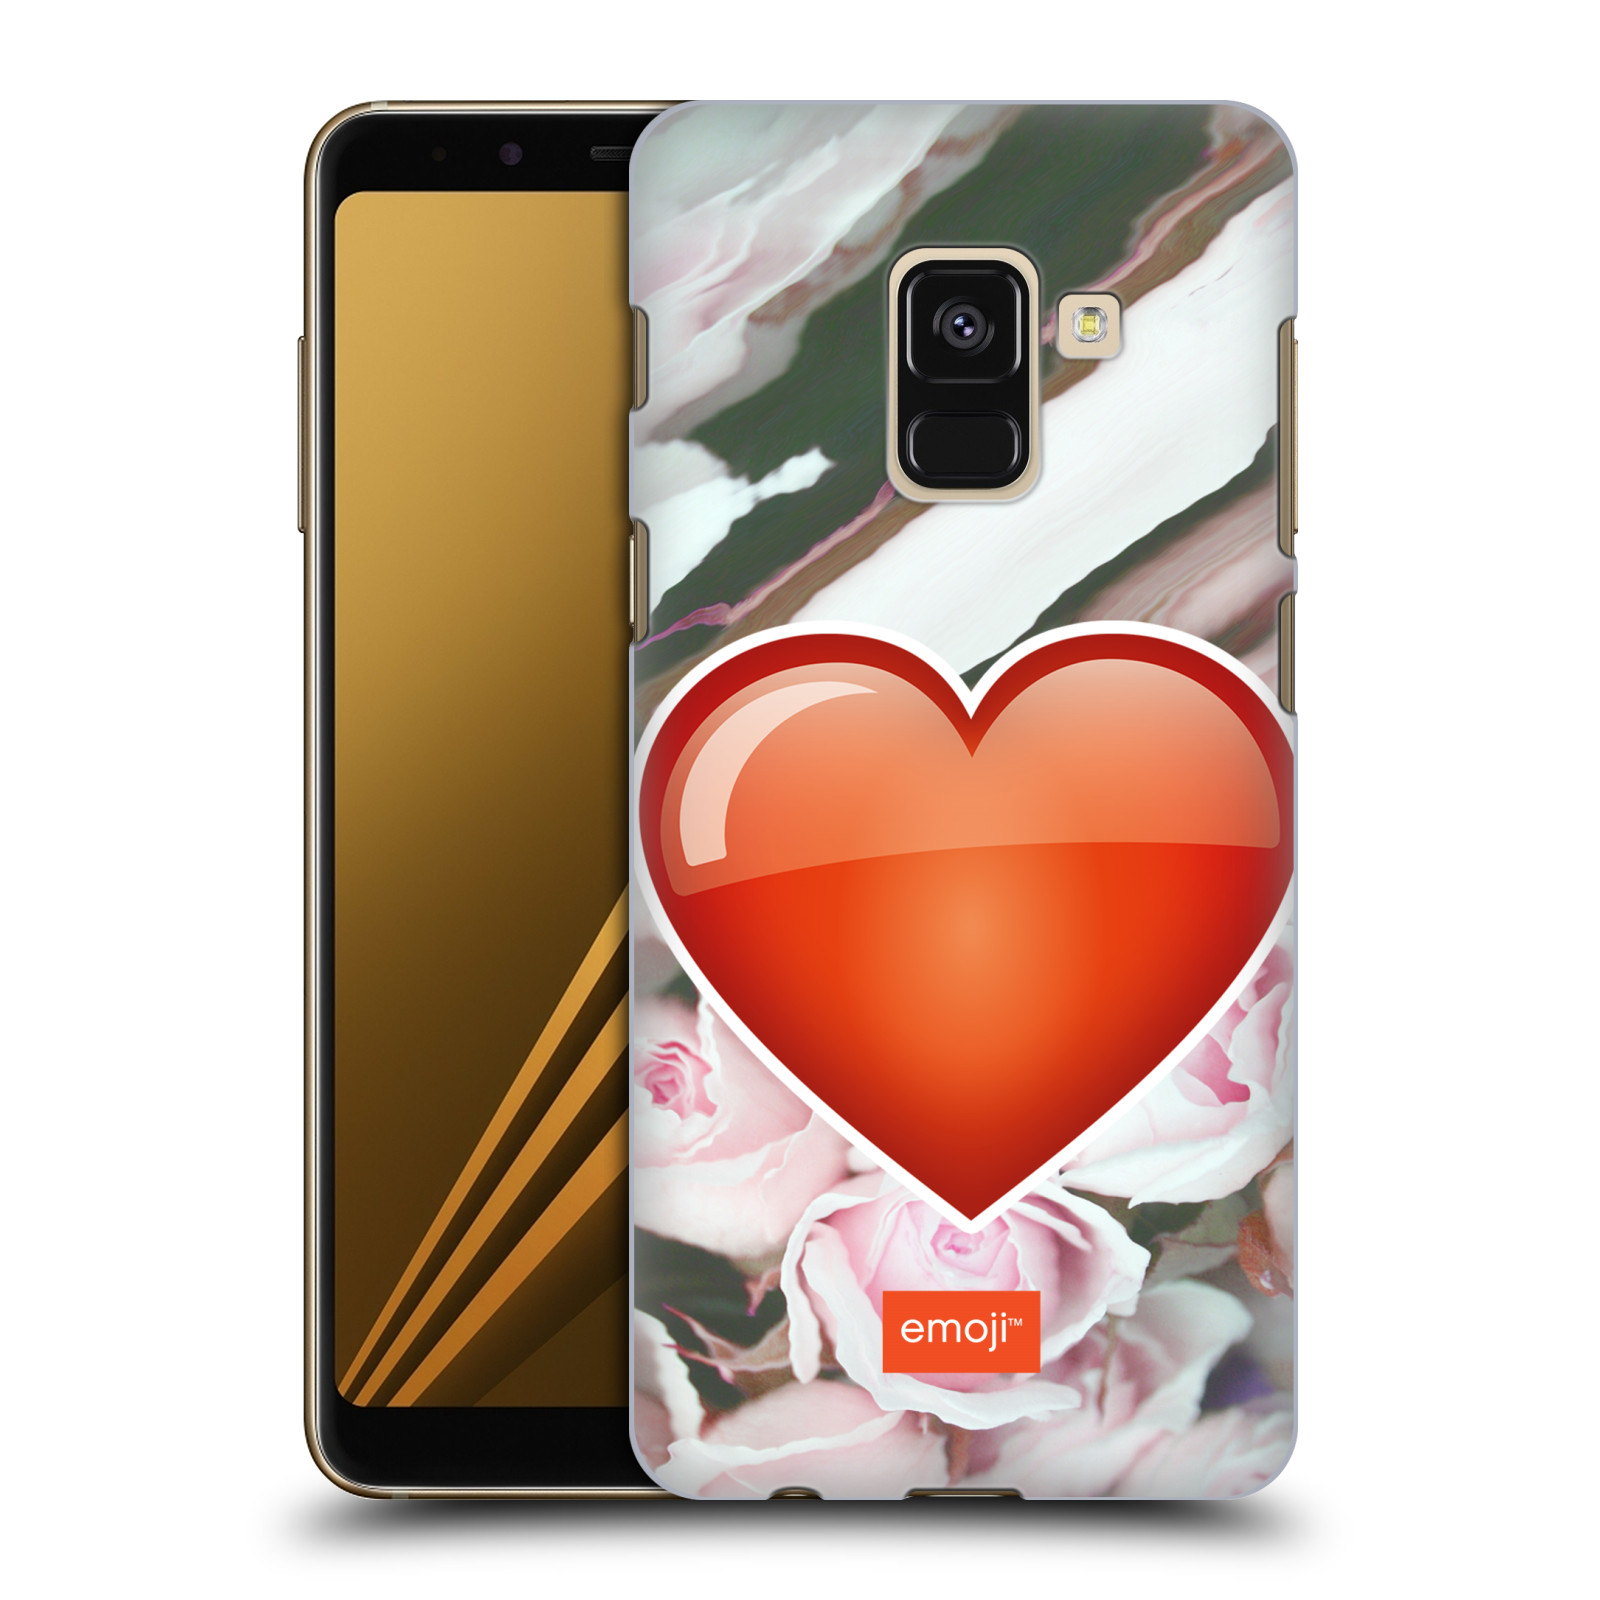 Pouzdro na mobil Samsung Galaxy A8+ 2018, A8 PLUS 2018 - HEAD CASE - Emoji srdíčko